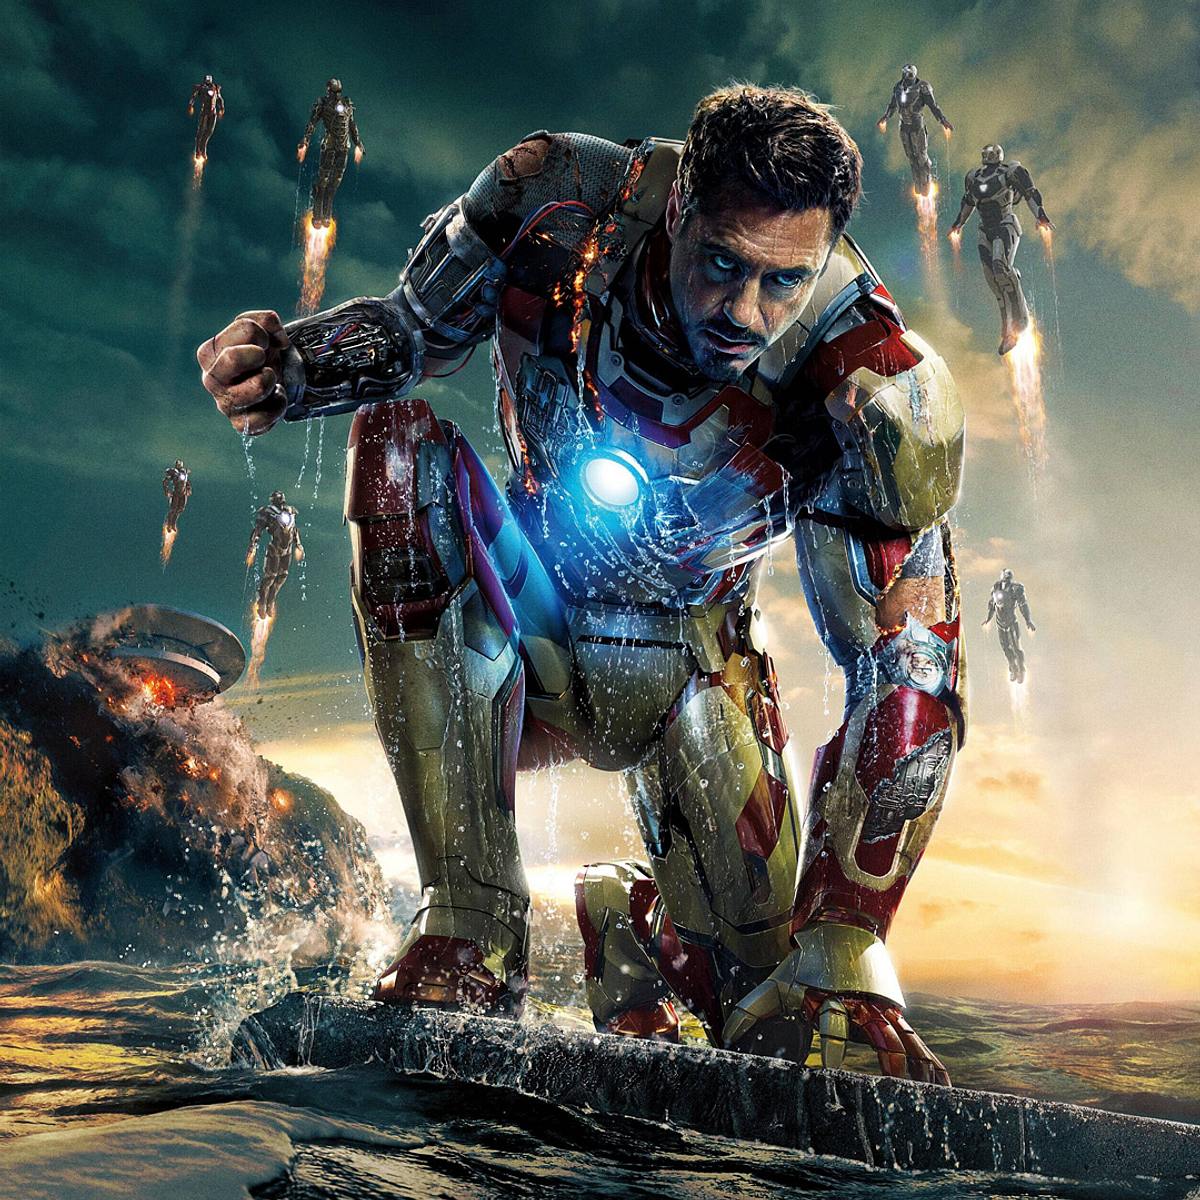 Beliebtesten Marvel-Charaktere: Iron Man / Tony Stark – Robert Downey Jr.